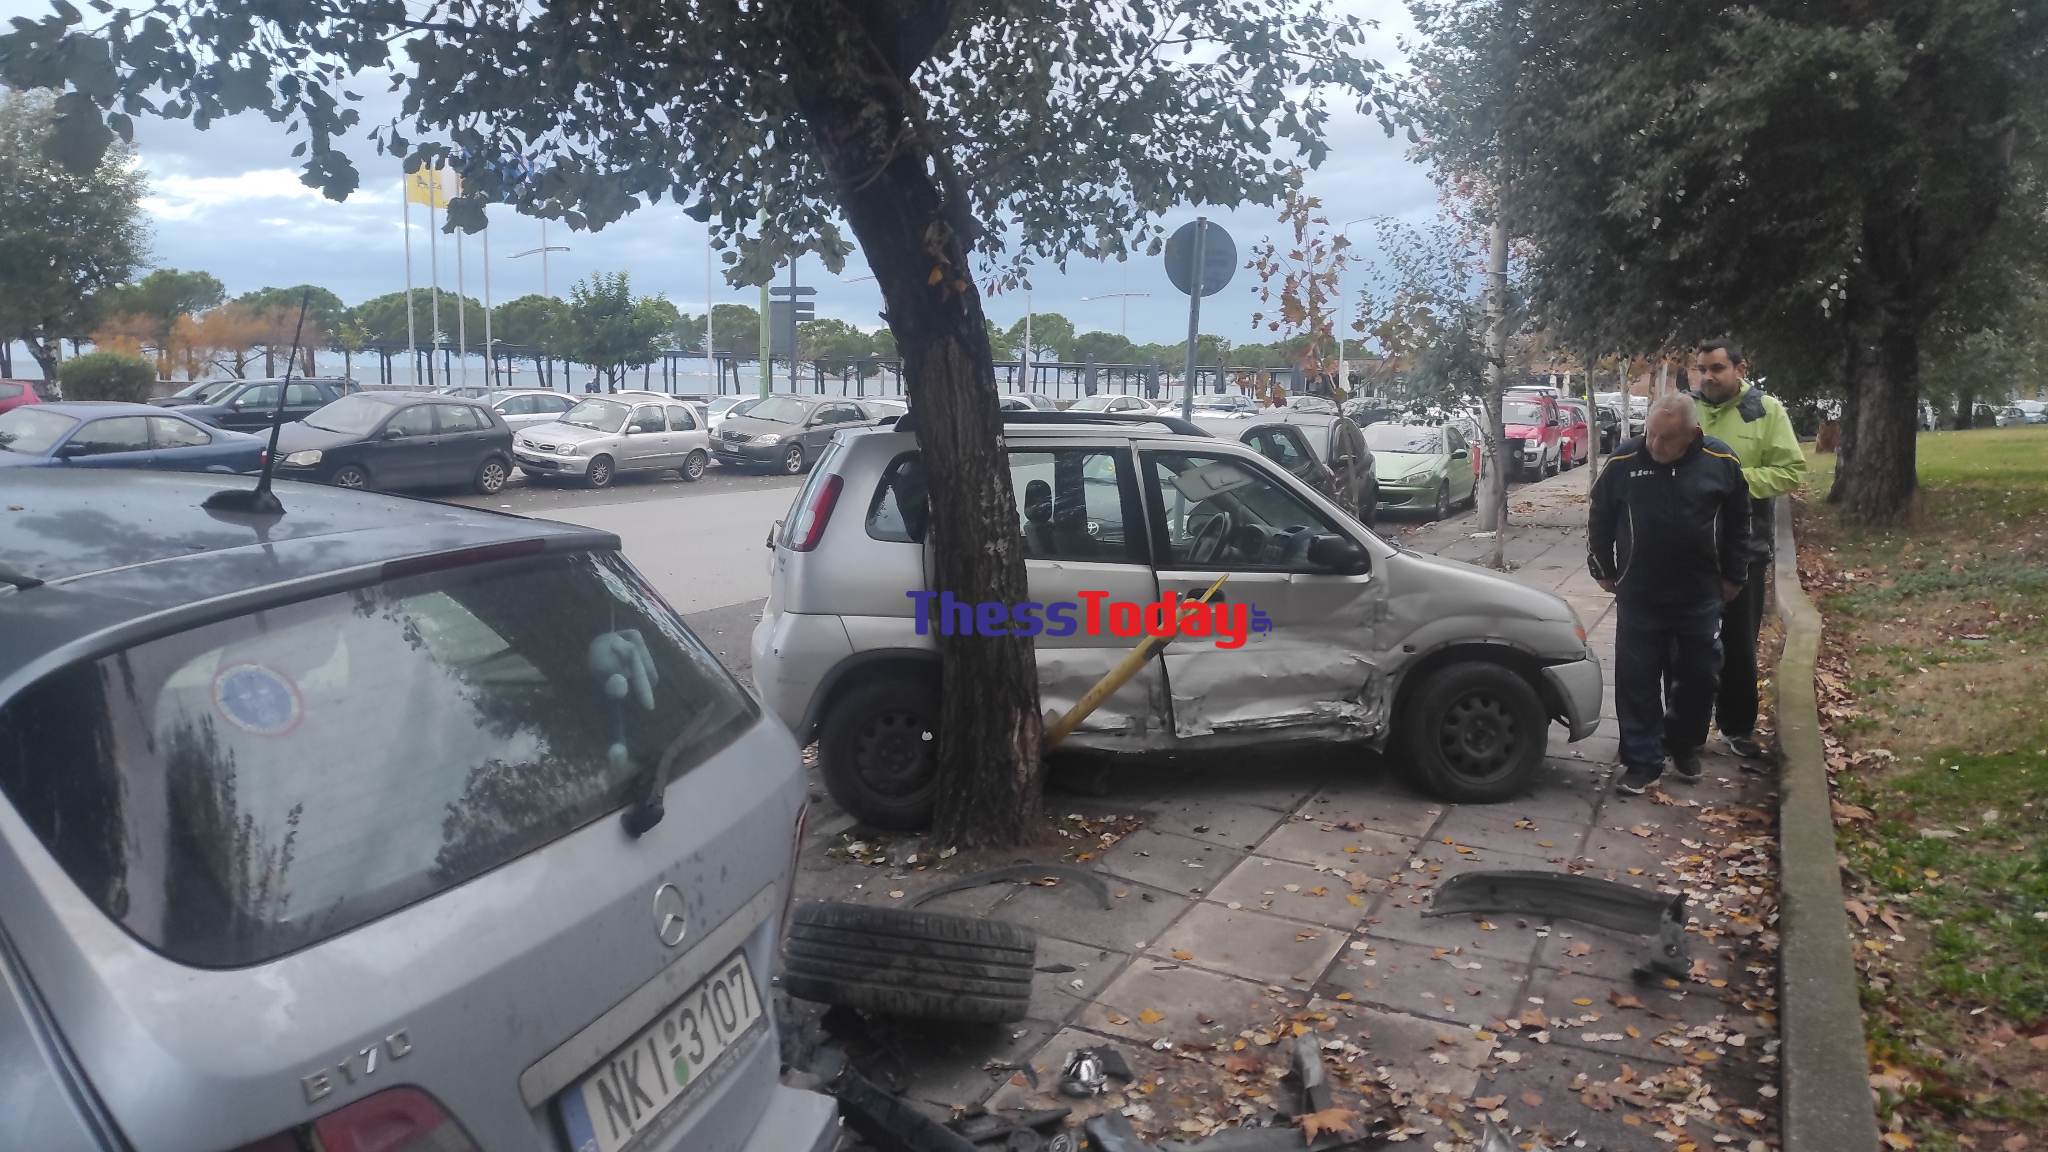 Θεσσαλονίκη: Οδηγός έριξε το αυτοκίνητό του σε έξι παρκαρισμένα οχήματα, το κλείδωσε και έφυγε